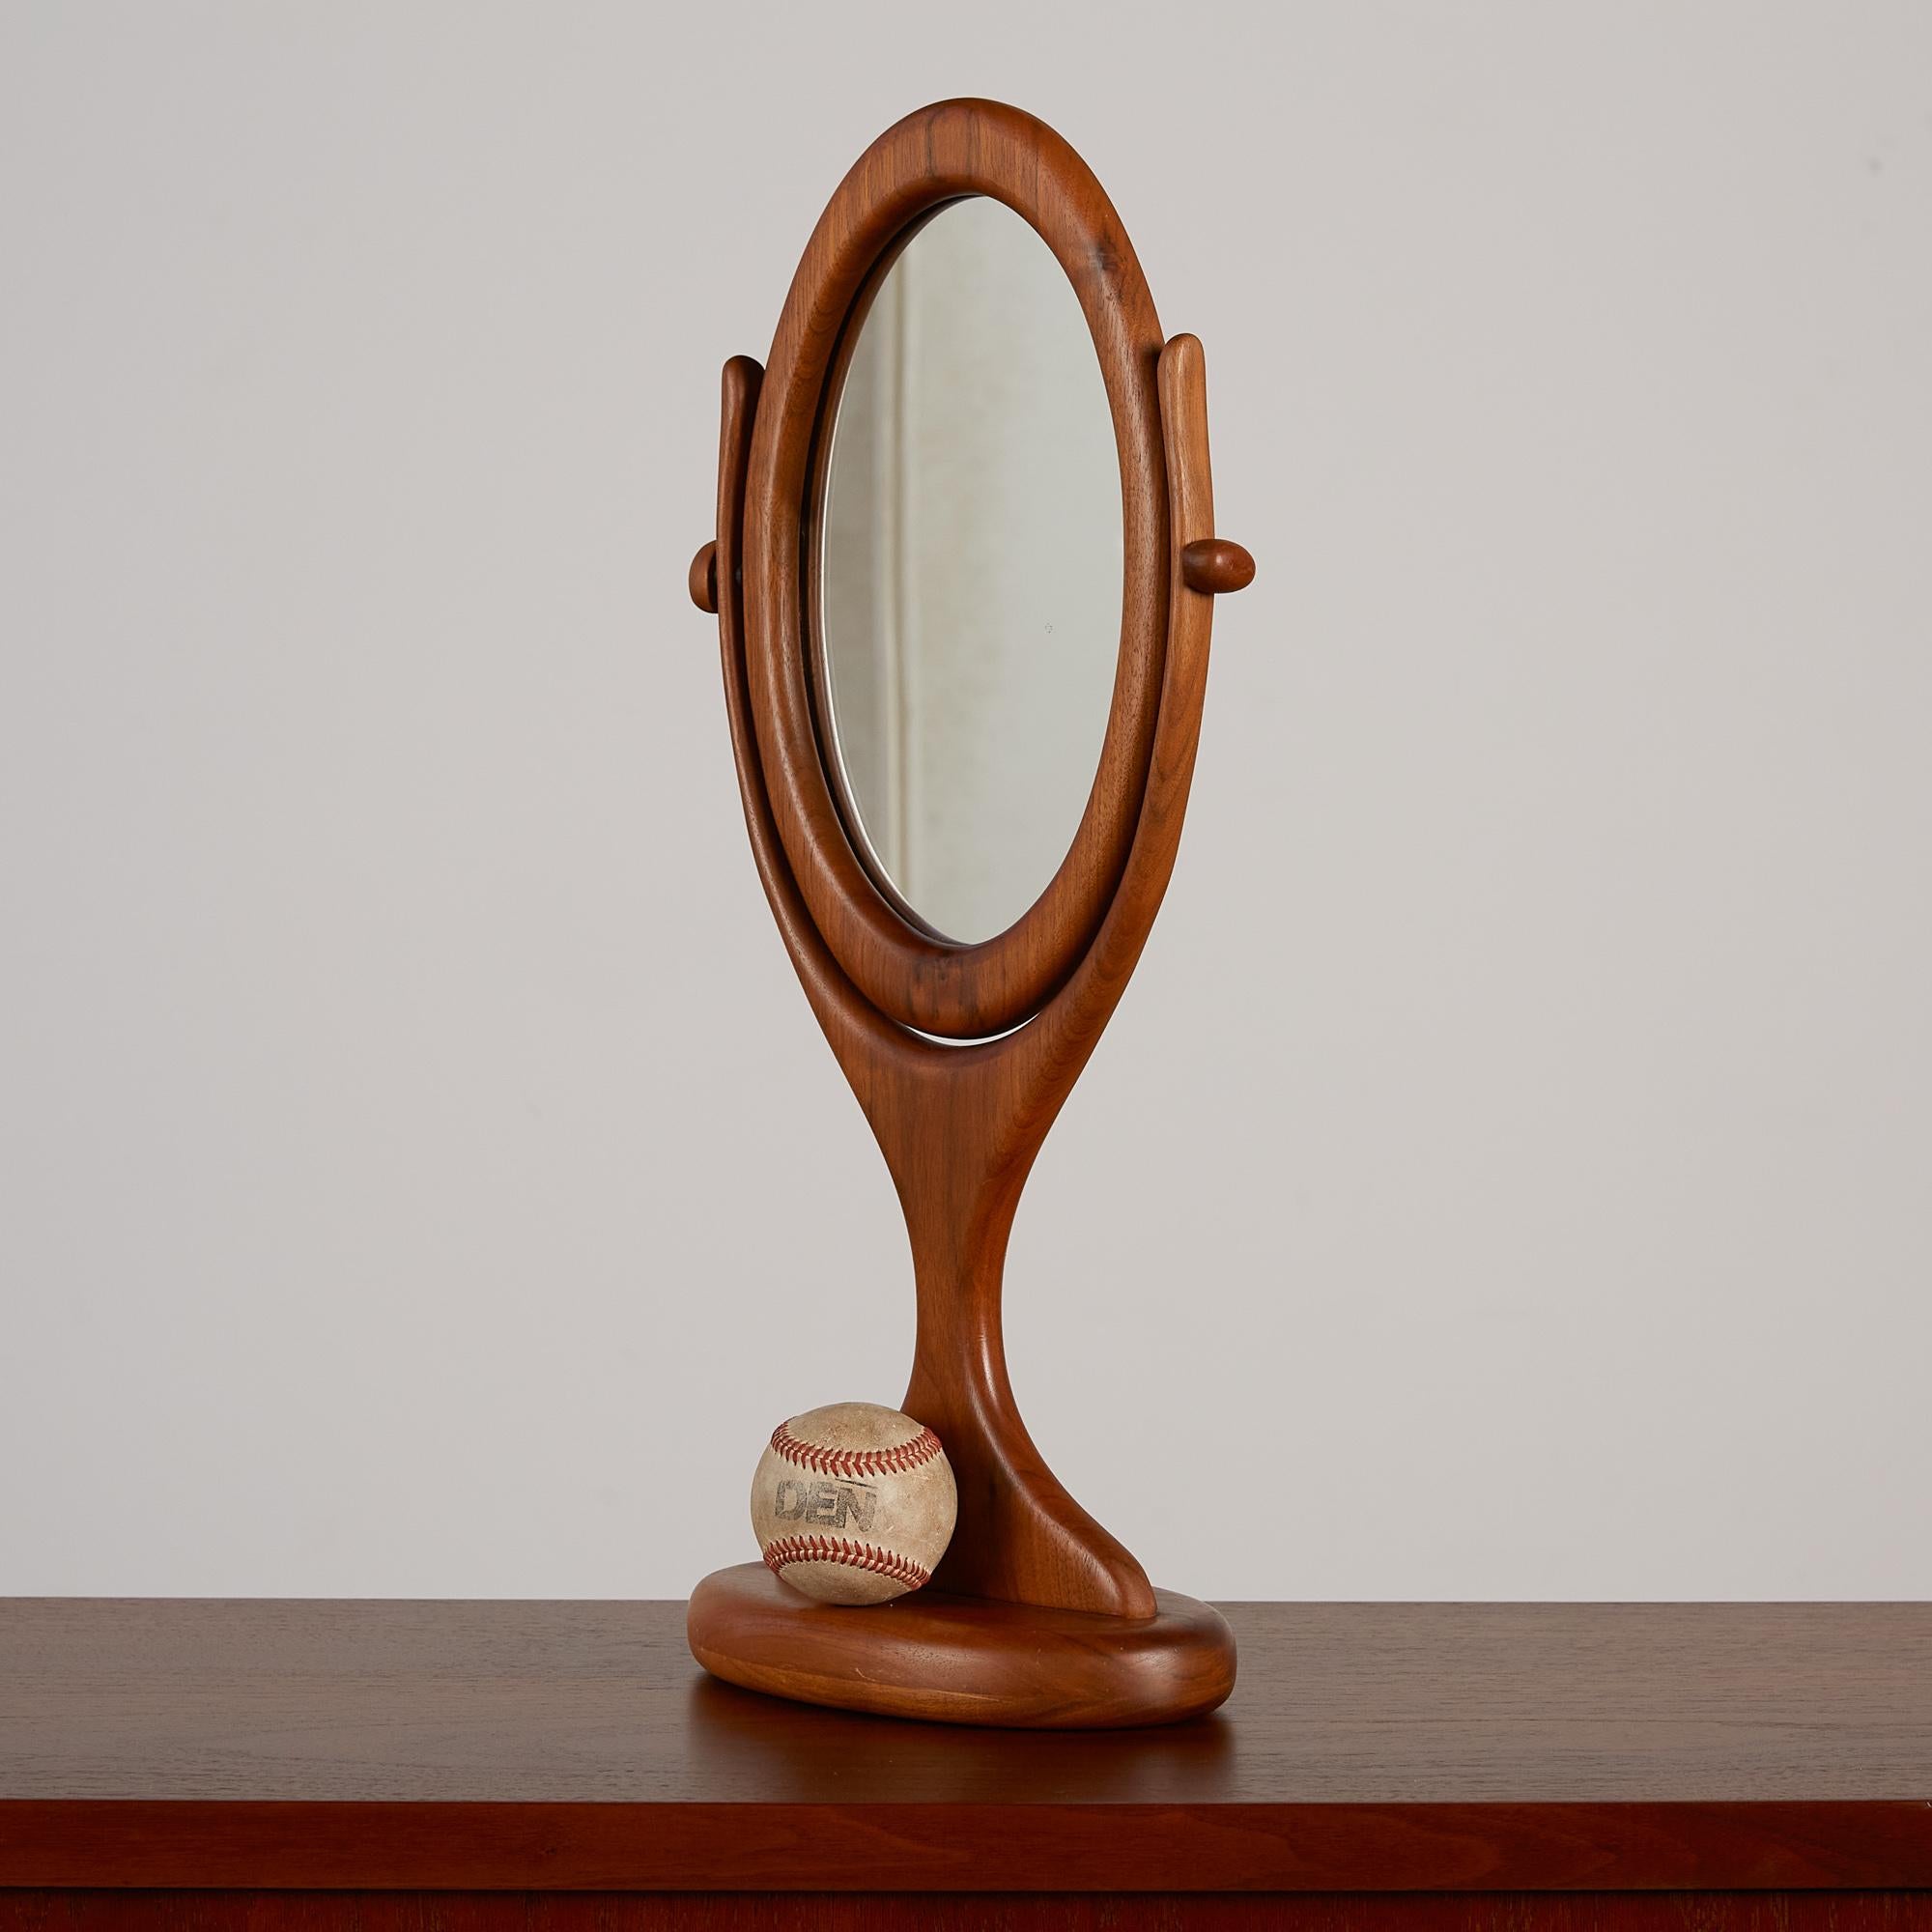 Ce miroir de courtoisie sculpté à la main présente un cadre épais en noyer sculpté avec une pièce de verre insérée de forme ovale. Le miroir est placé dans un cadre pivotant pour ajuster votre angle. Ce design ludique serait parfait pour une vanité,